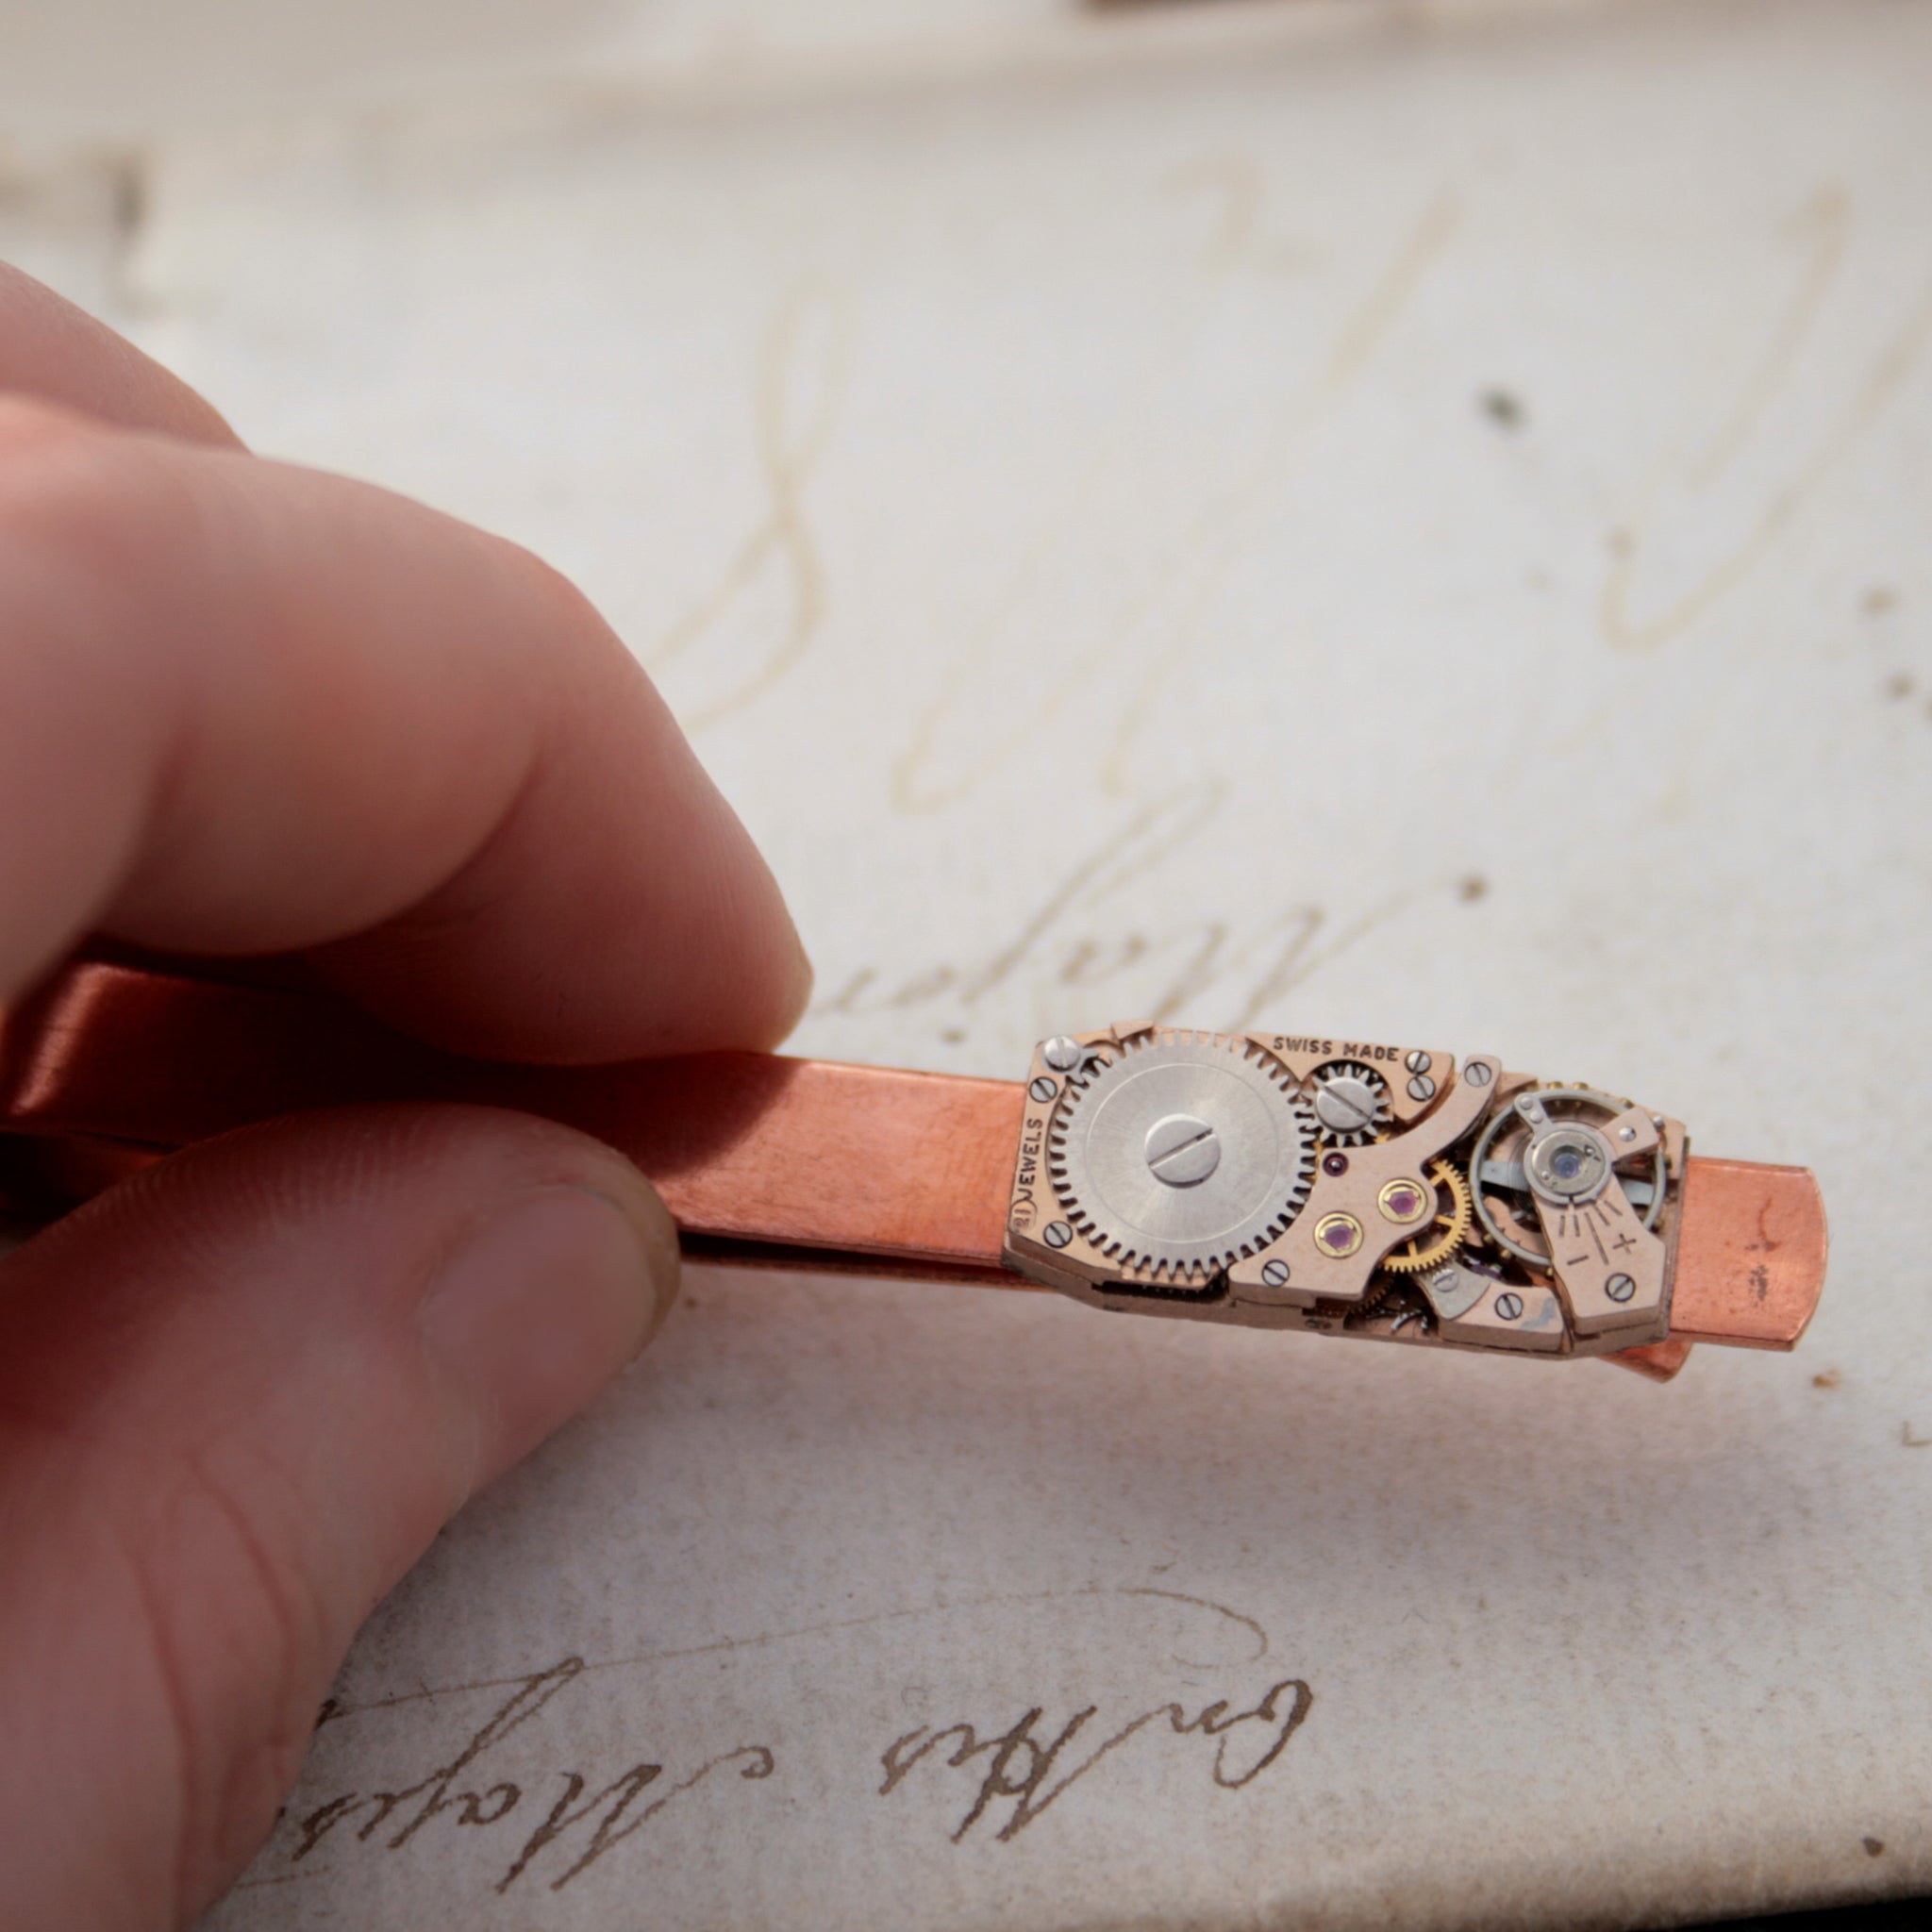 Copper Tie Clip with Steampunk Watch Work